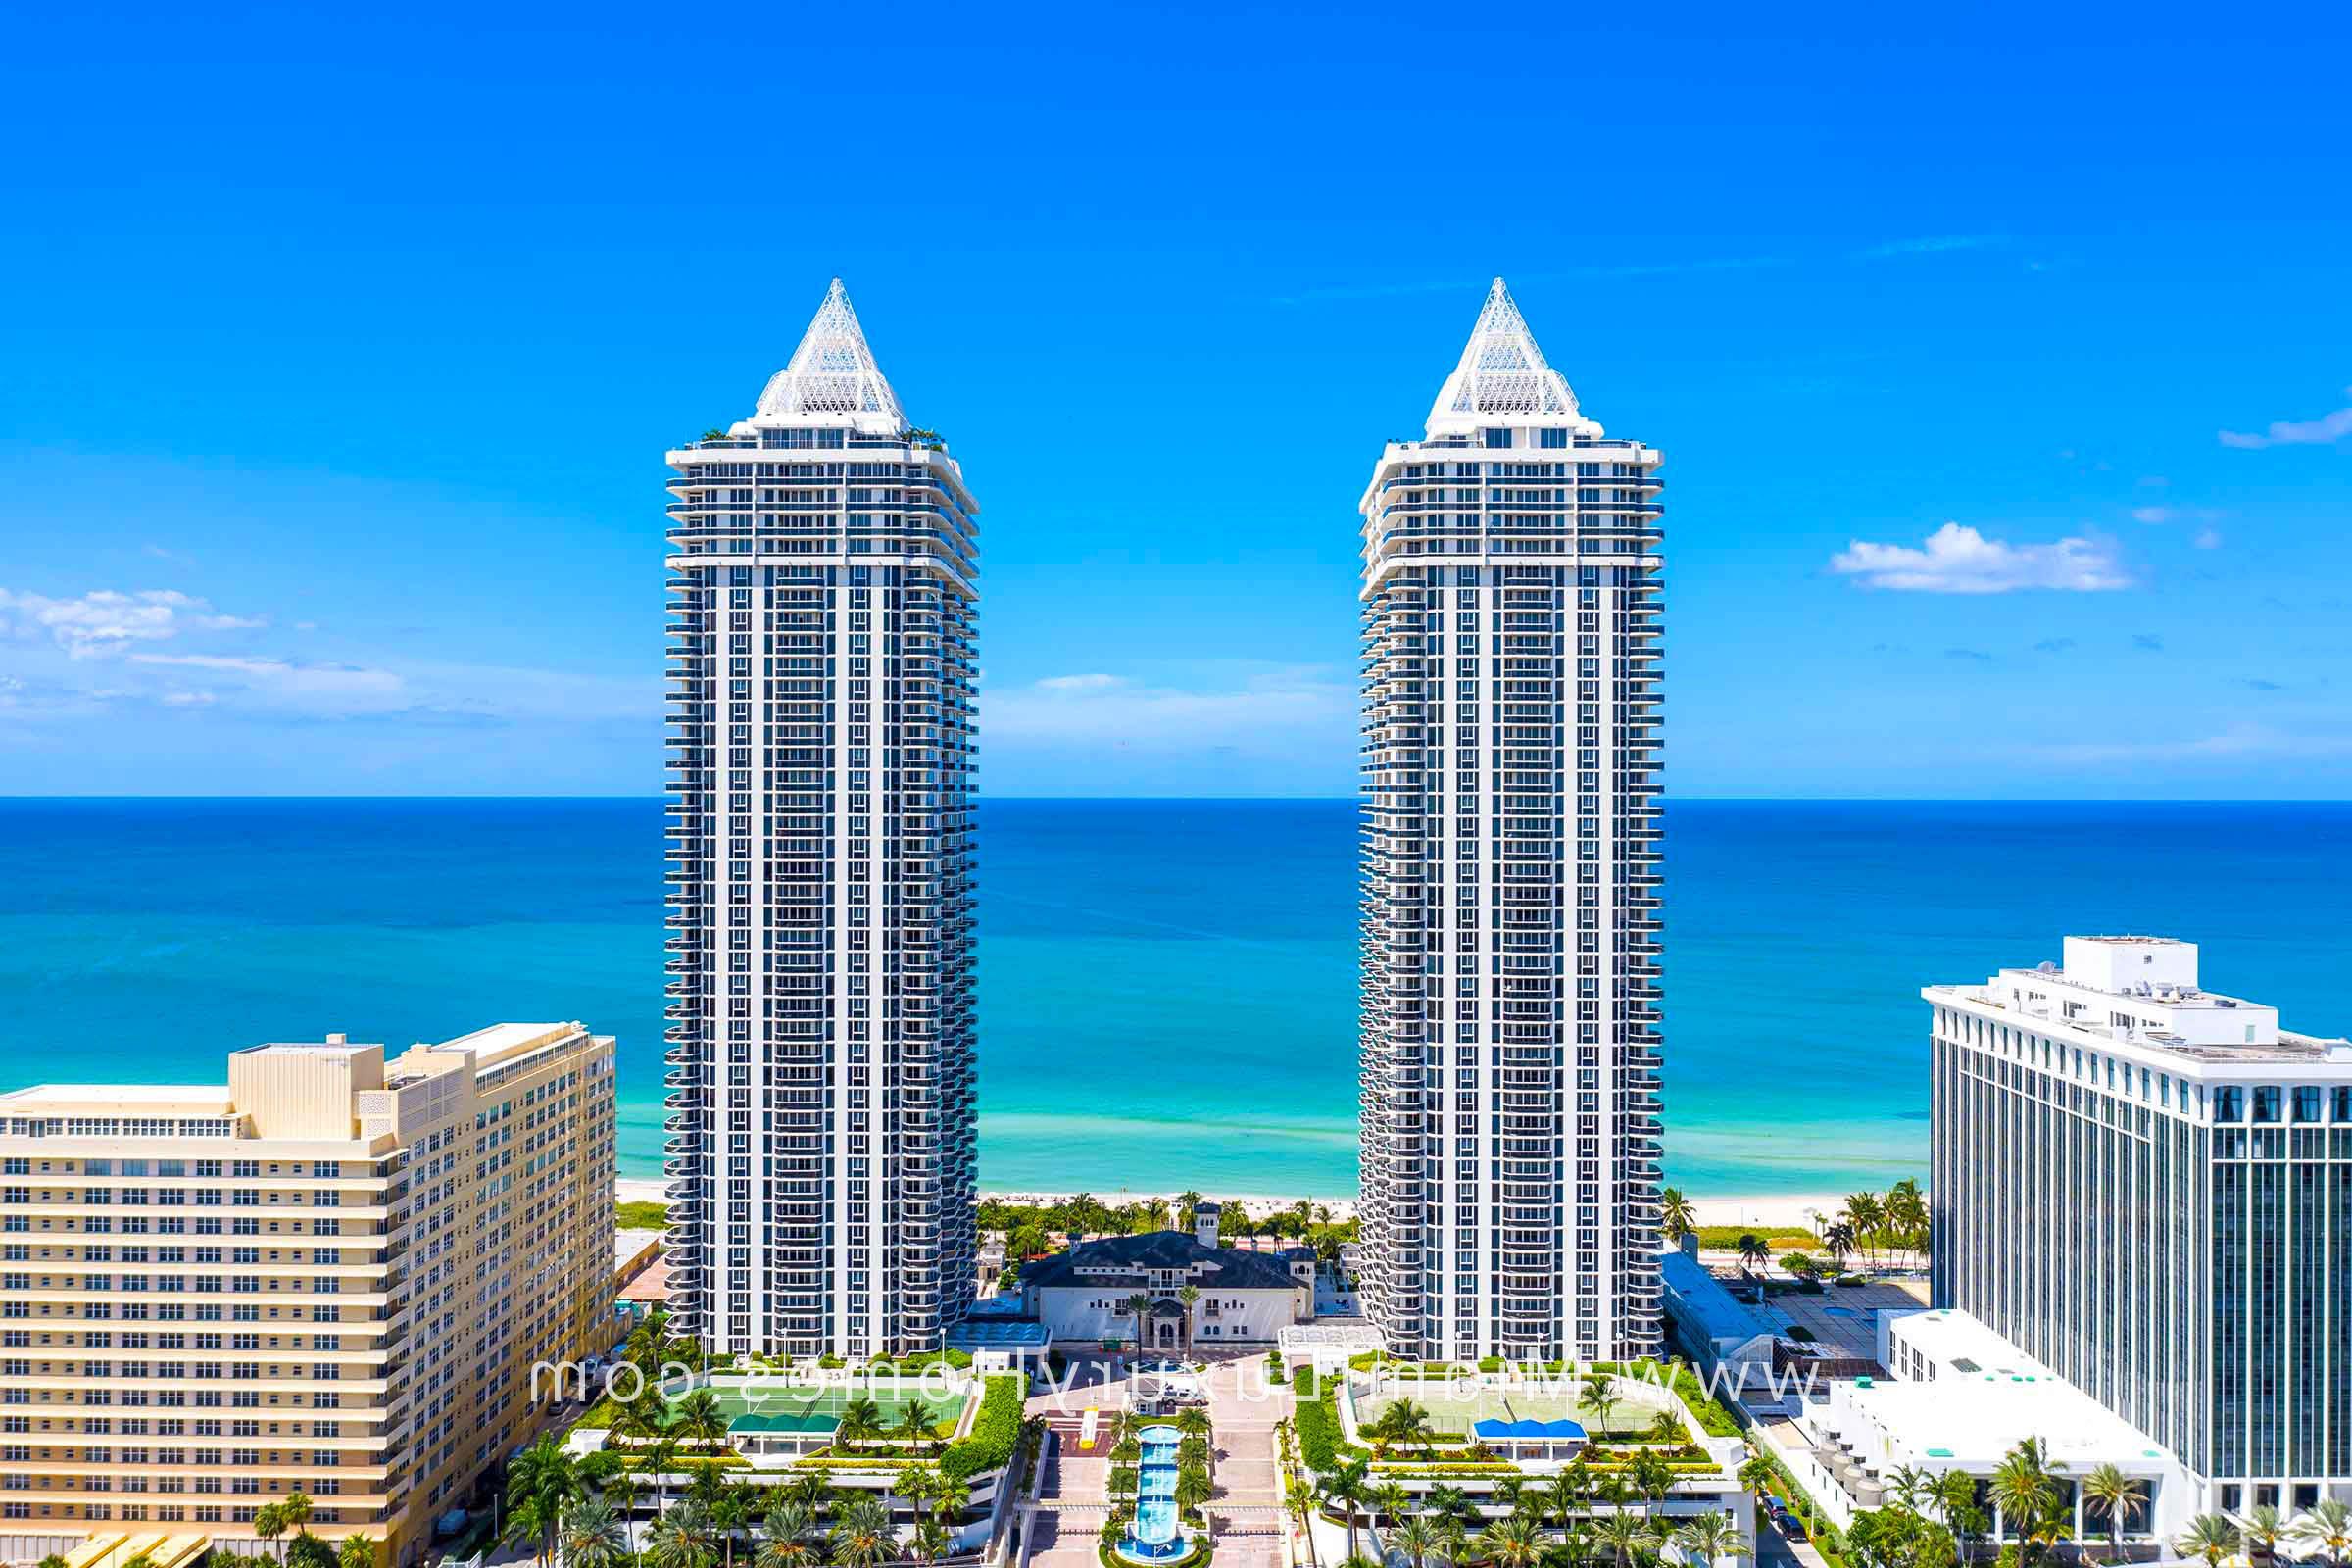 Blue and 绿色钻石 Condo Buildings in Miami